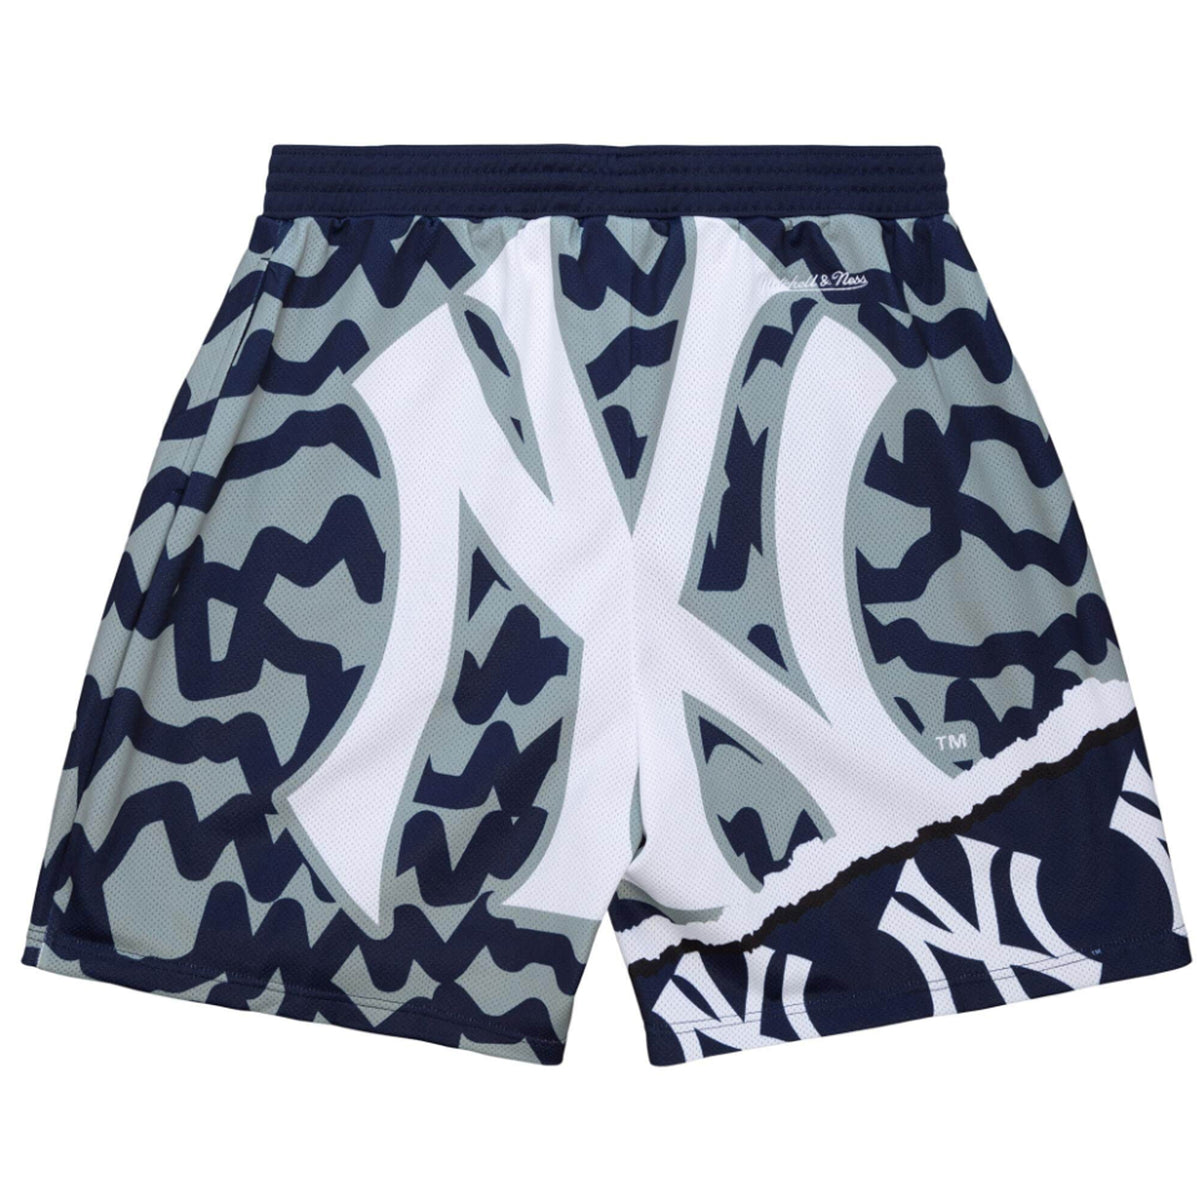 Mitchell & Ness x MLB Paint Brush Sublimated Mesh Shorts - White